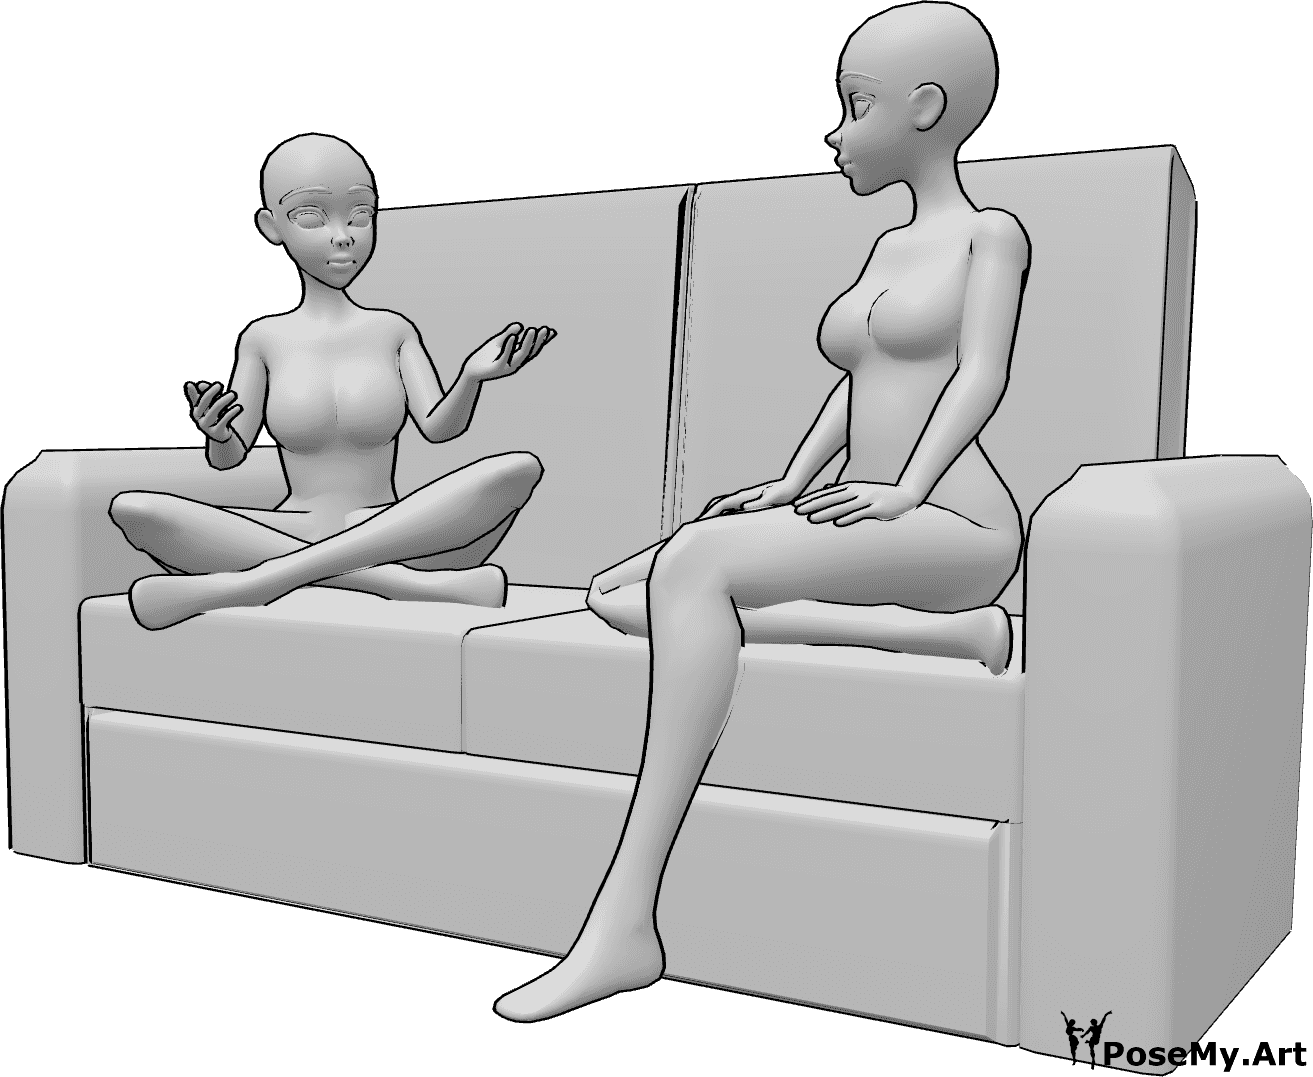 Referência de poses- Pose de anime sentado a falar - Duas mulheres de anime estão sentadas no sofá e conversam, olhando uma para a outra